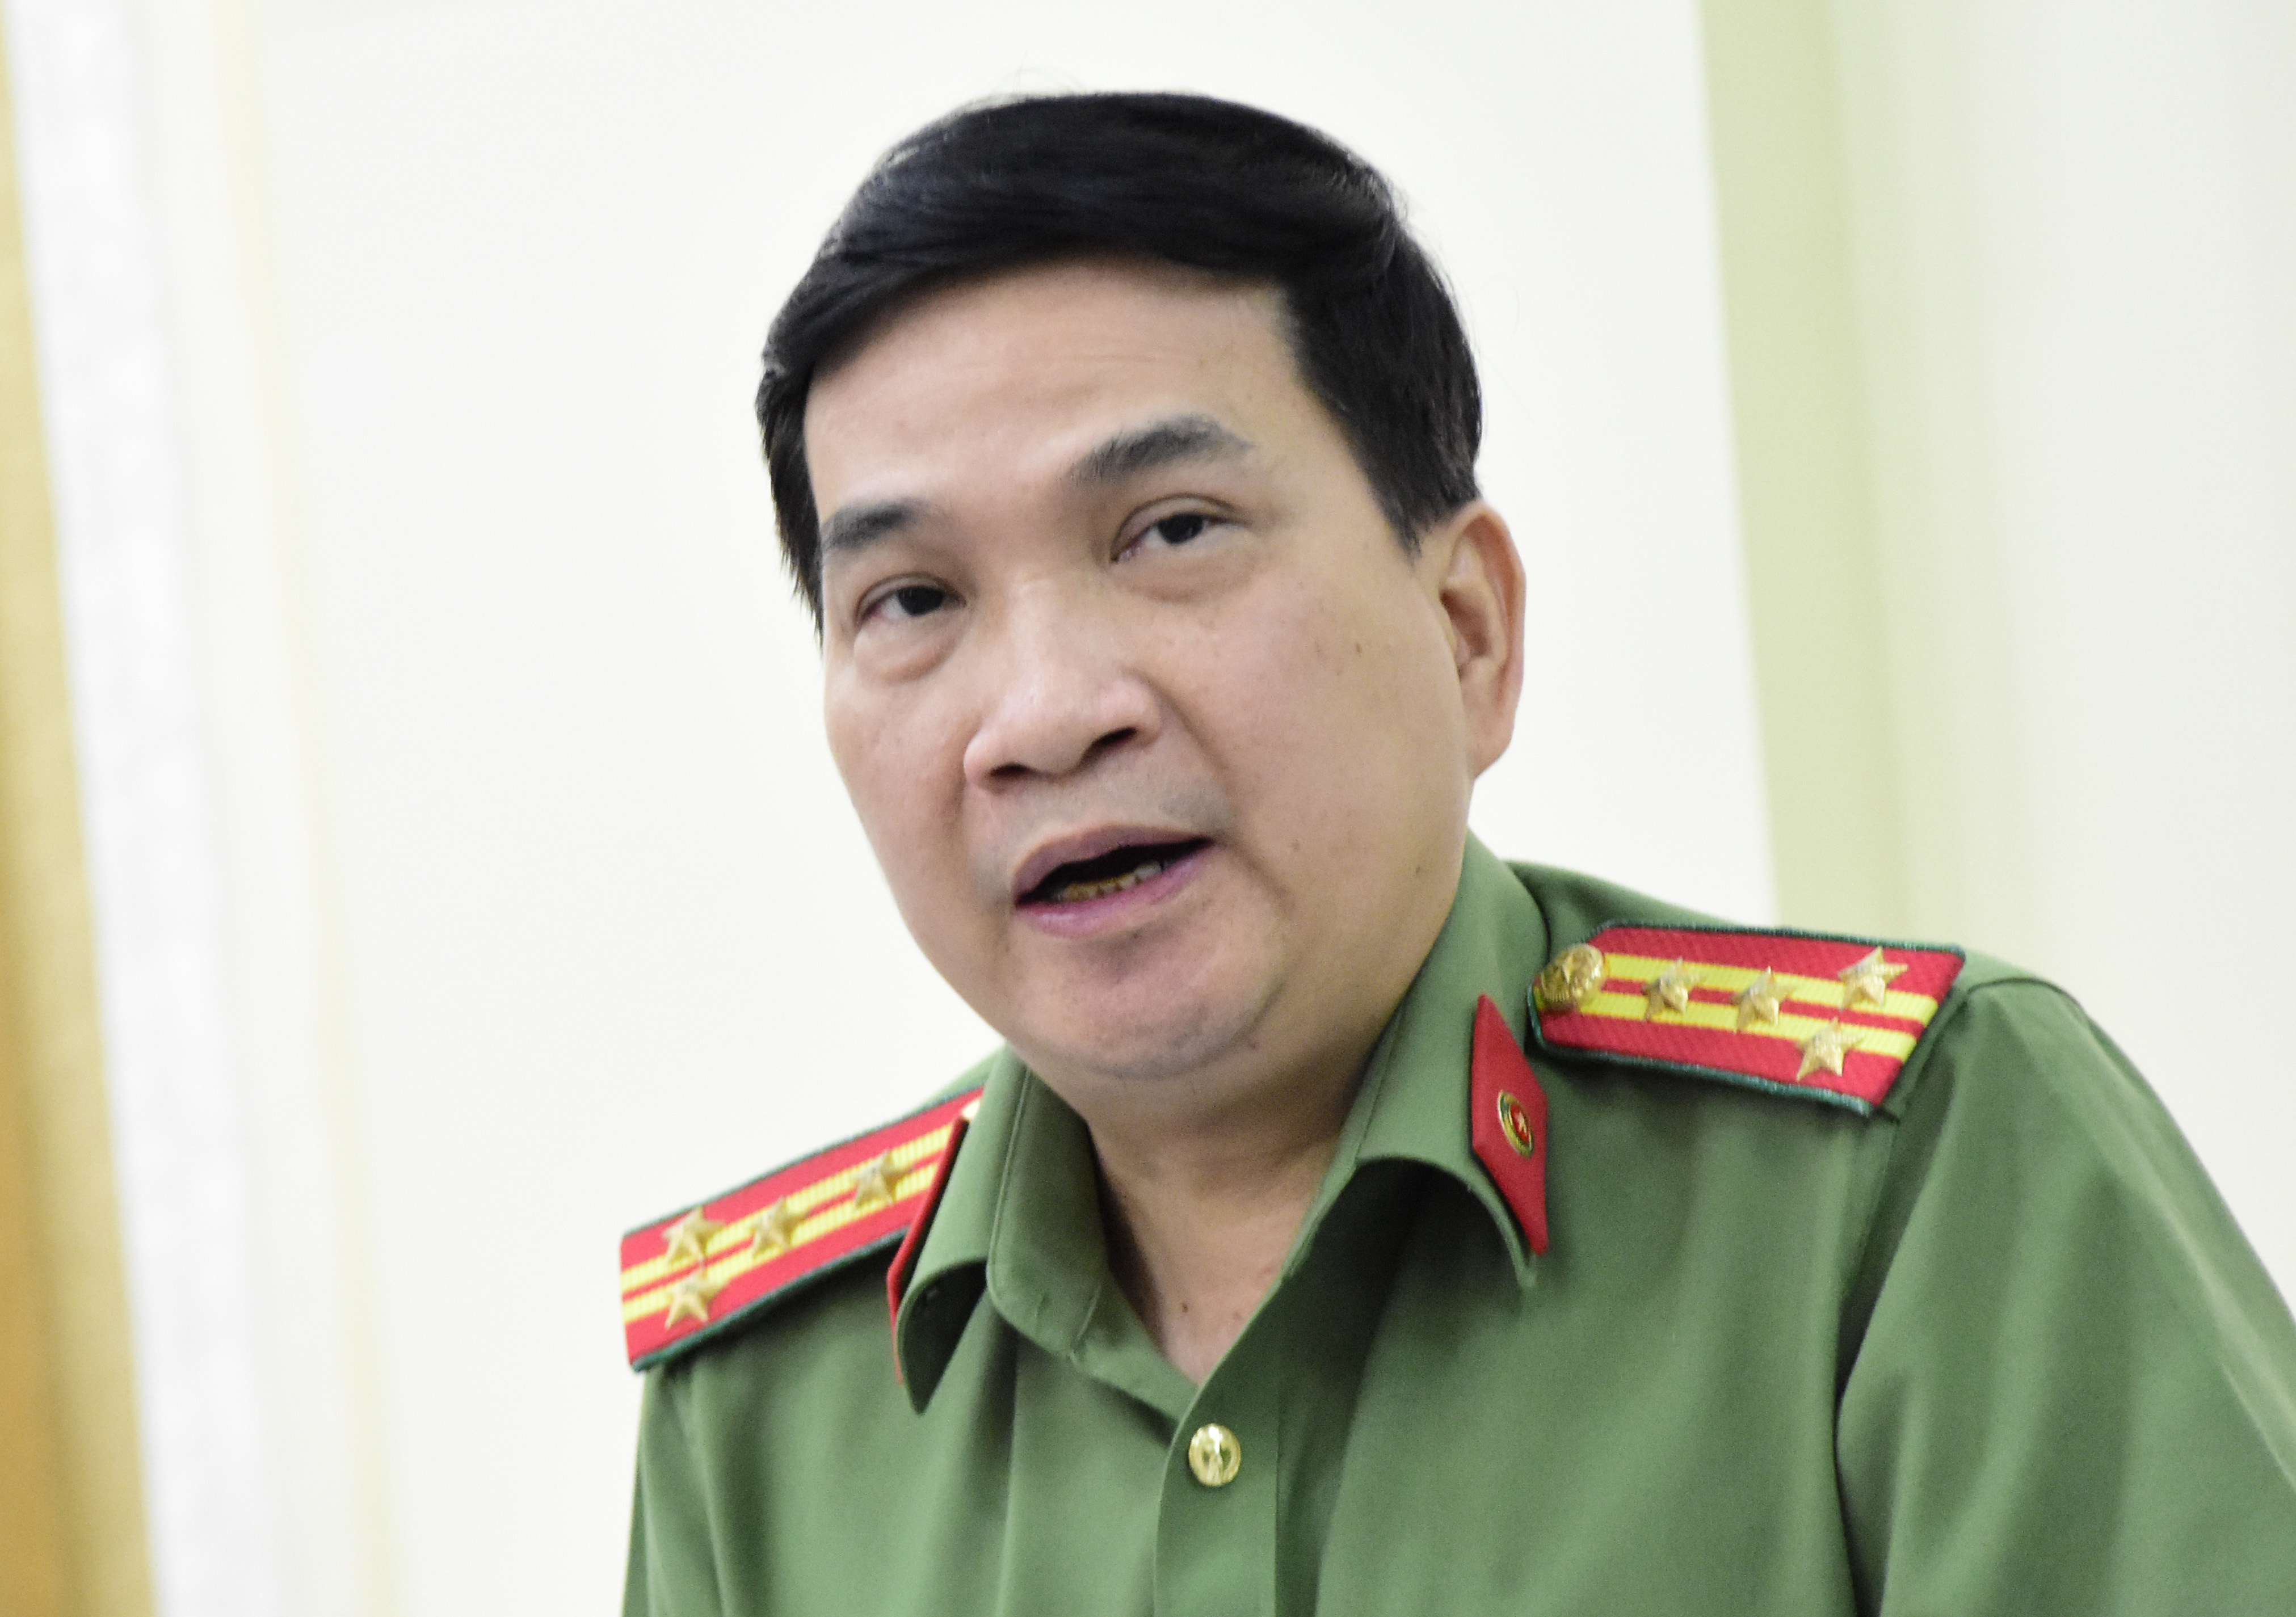 Đại tá Nguyễn Sỹ Quang nói về việc các cán bộ công an sai phạm trong thời gian qua. Ảnh: Lê Trai.